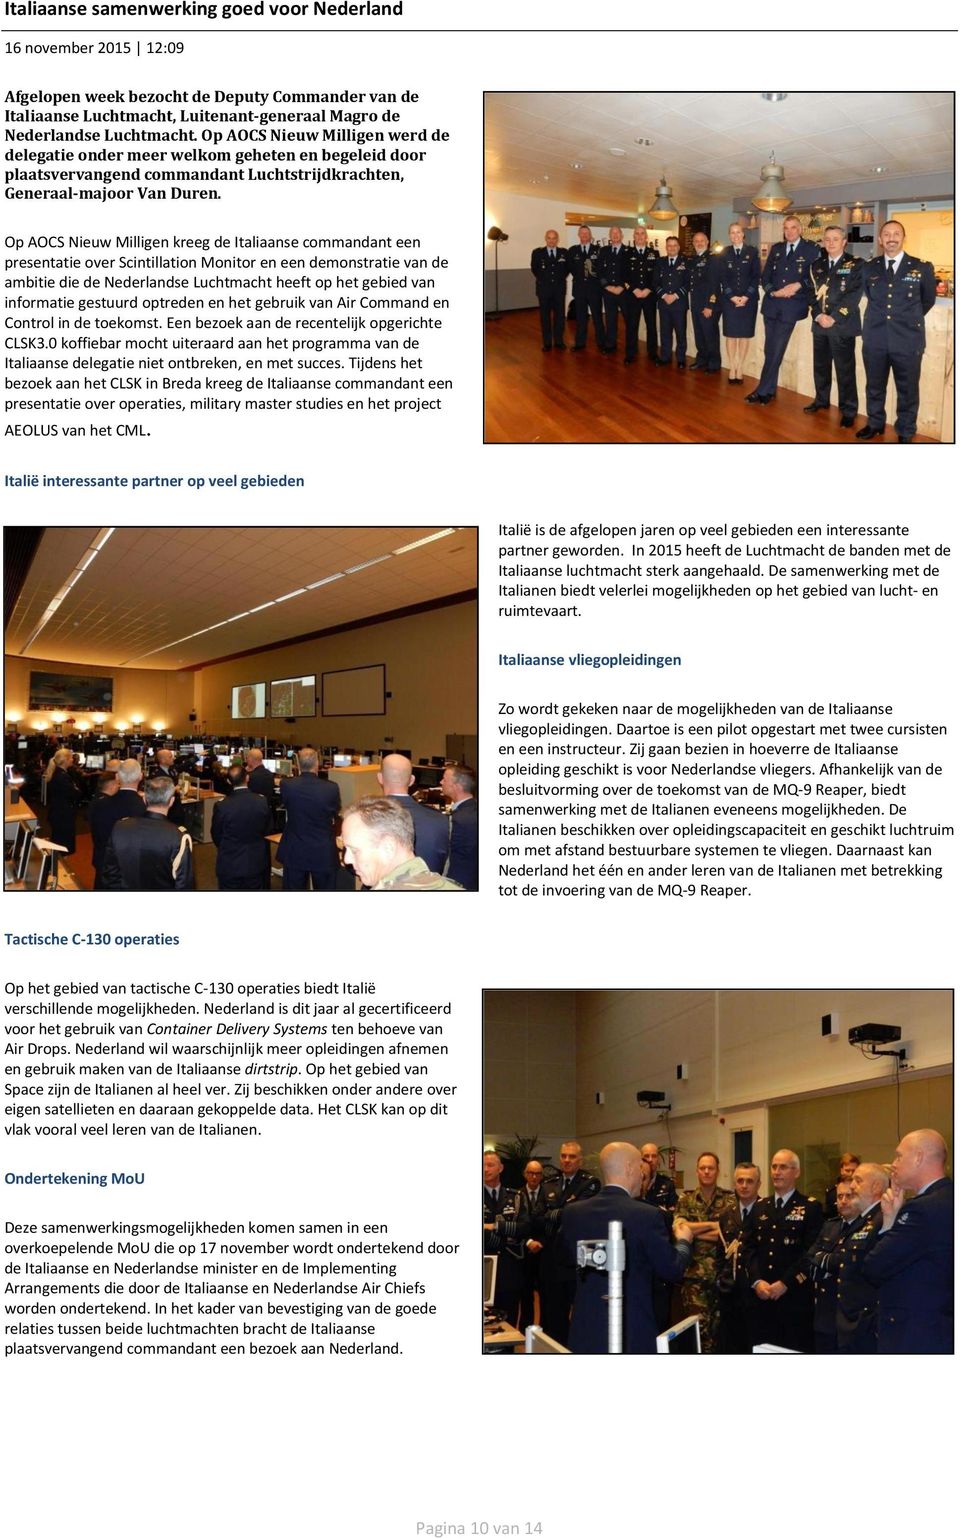 Op AOCS Nieuw Milligen kreeg de Italiaanse commandant een presentatie over Scintillation Monitor en een demonstratie van de ambitie die de Nederlandse Luchtmacht heeft op het gebied van informatie